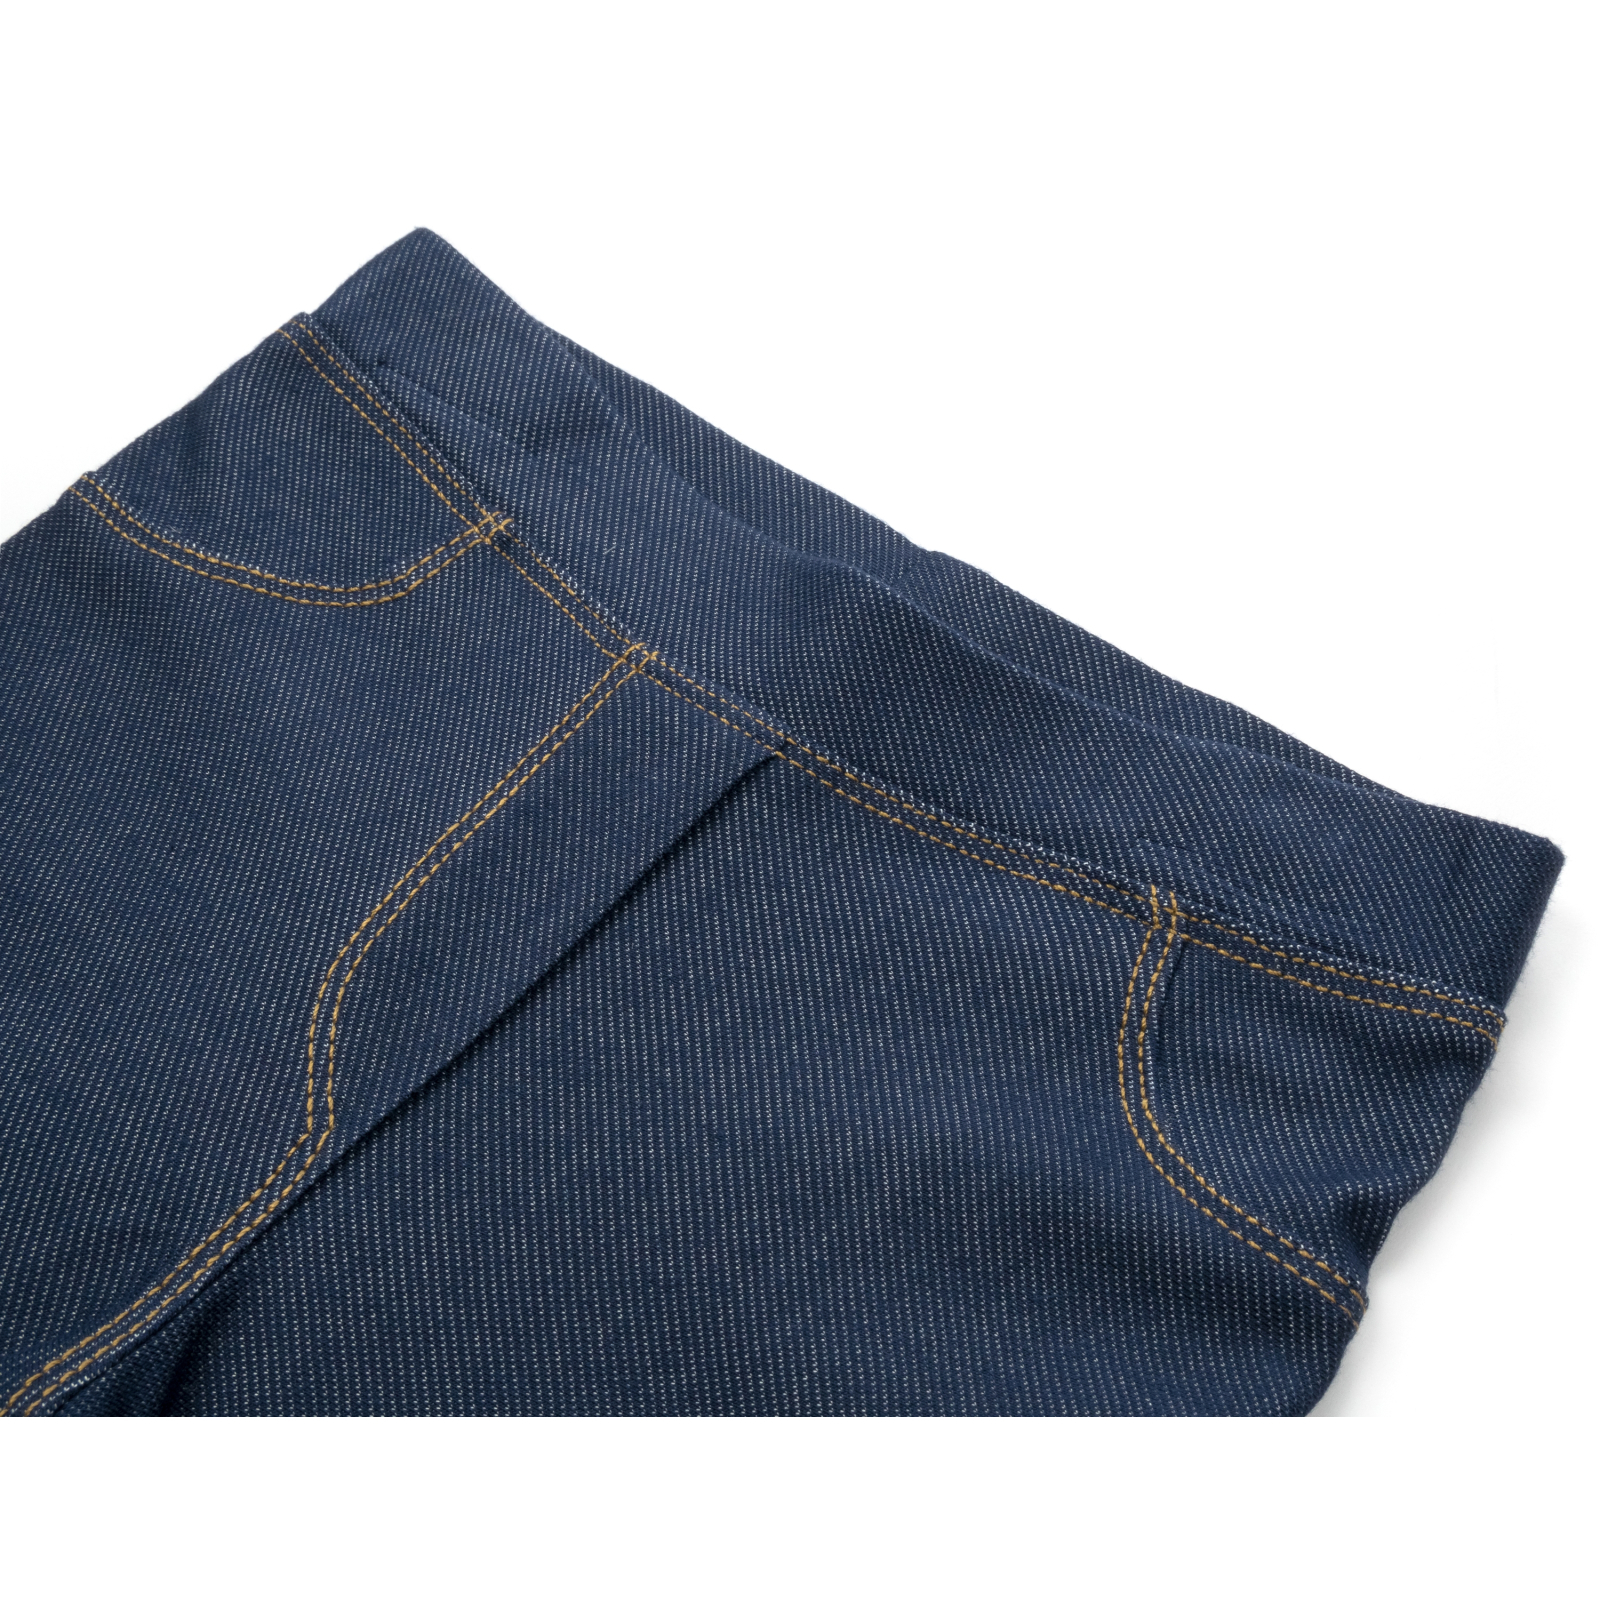 Лосины Breeze трикотажные (4415-104G-jeans) изображение 3